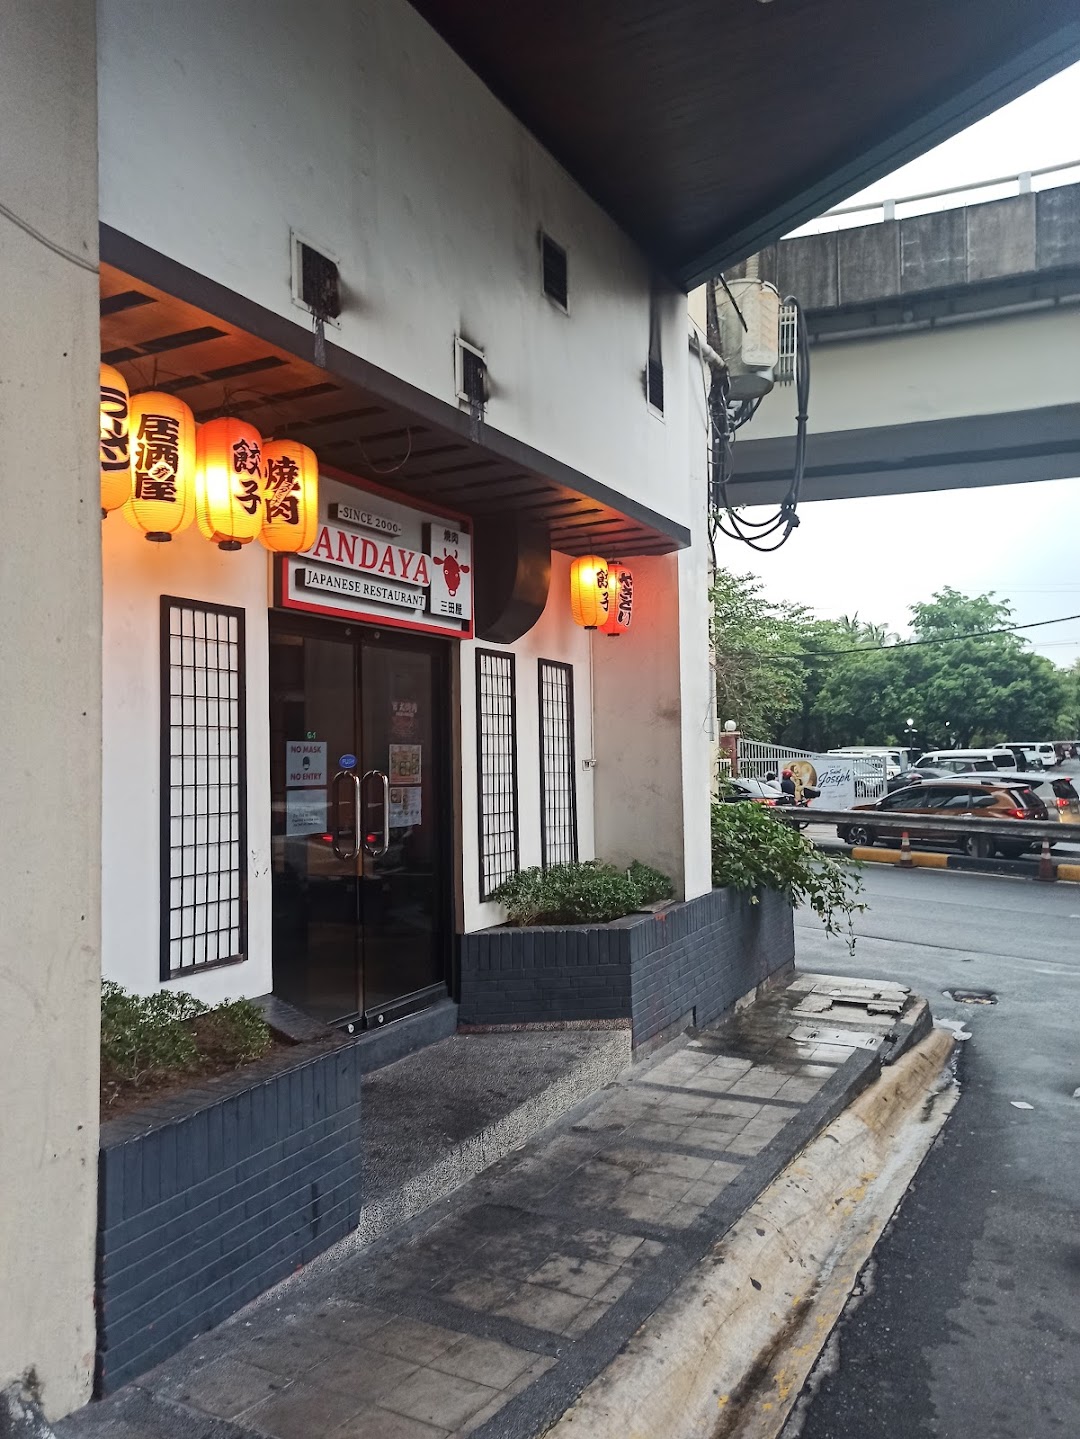 Sandaya Yakiniku Japanese Restaurant